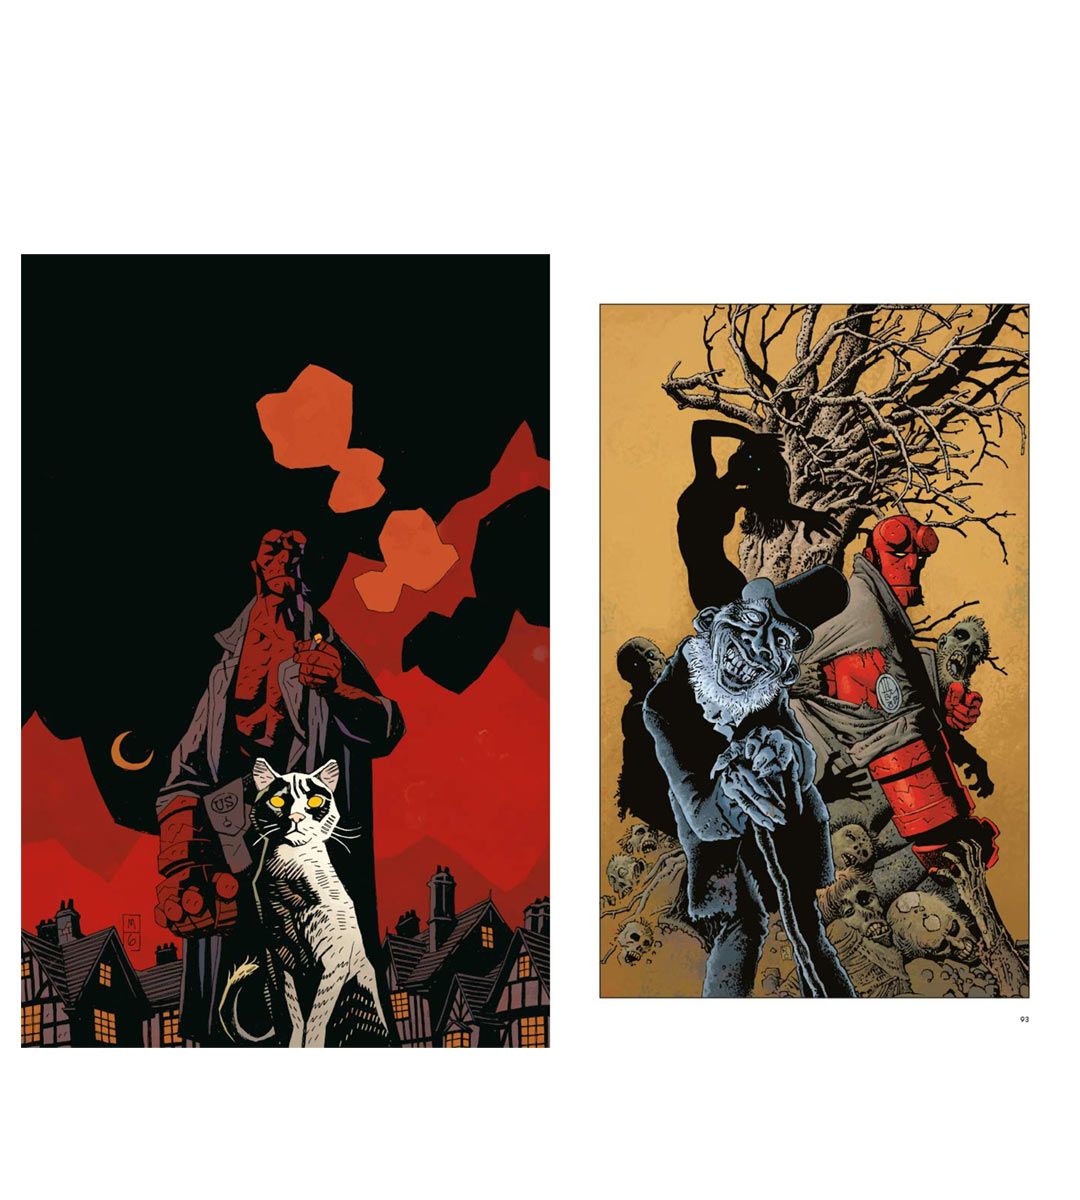 Hellboy - 25 años de portadas